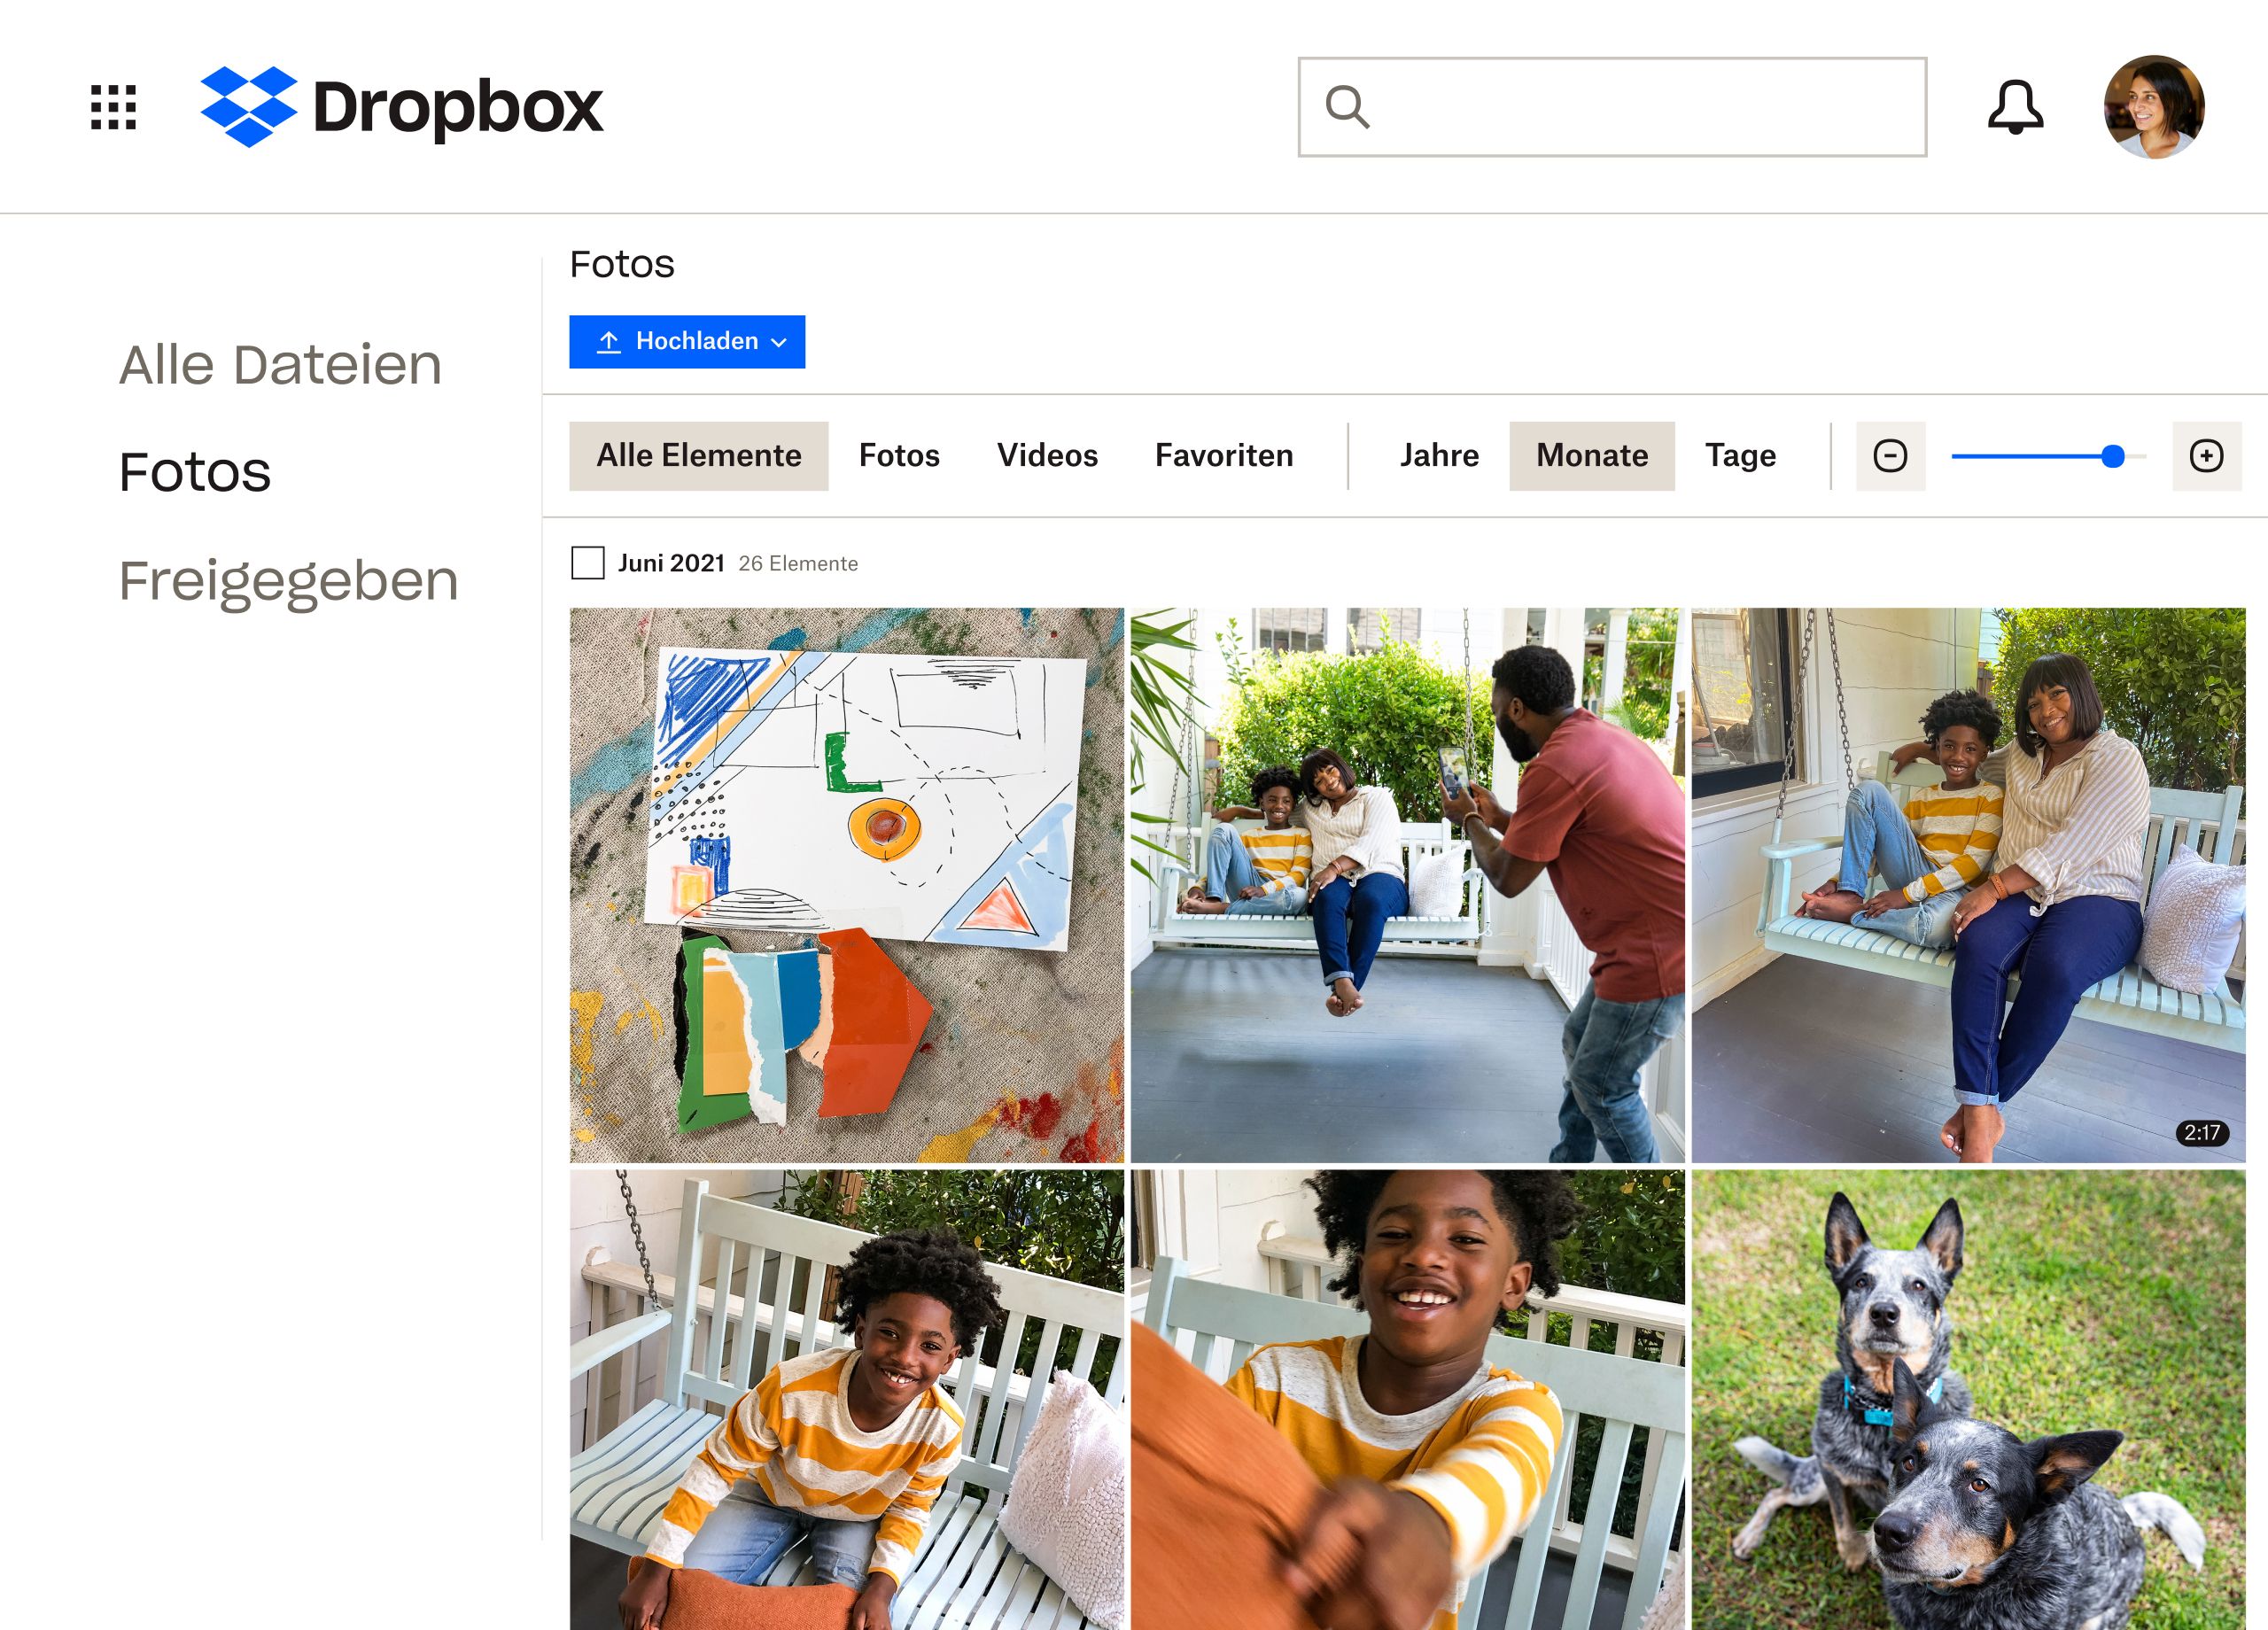 Eine Sammlung von Bildern einer Familie und ihrer Hunde, die in einem Dropbox-Ordner gespeichert werden